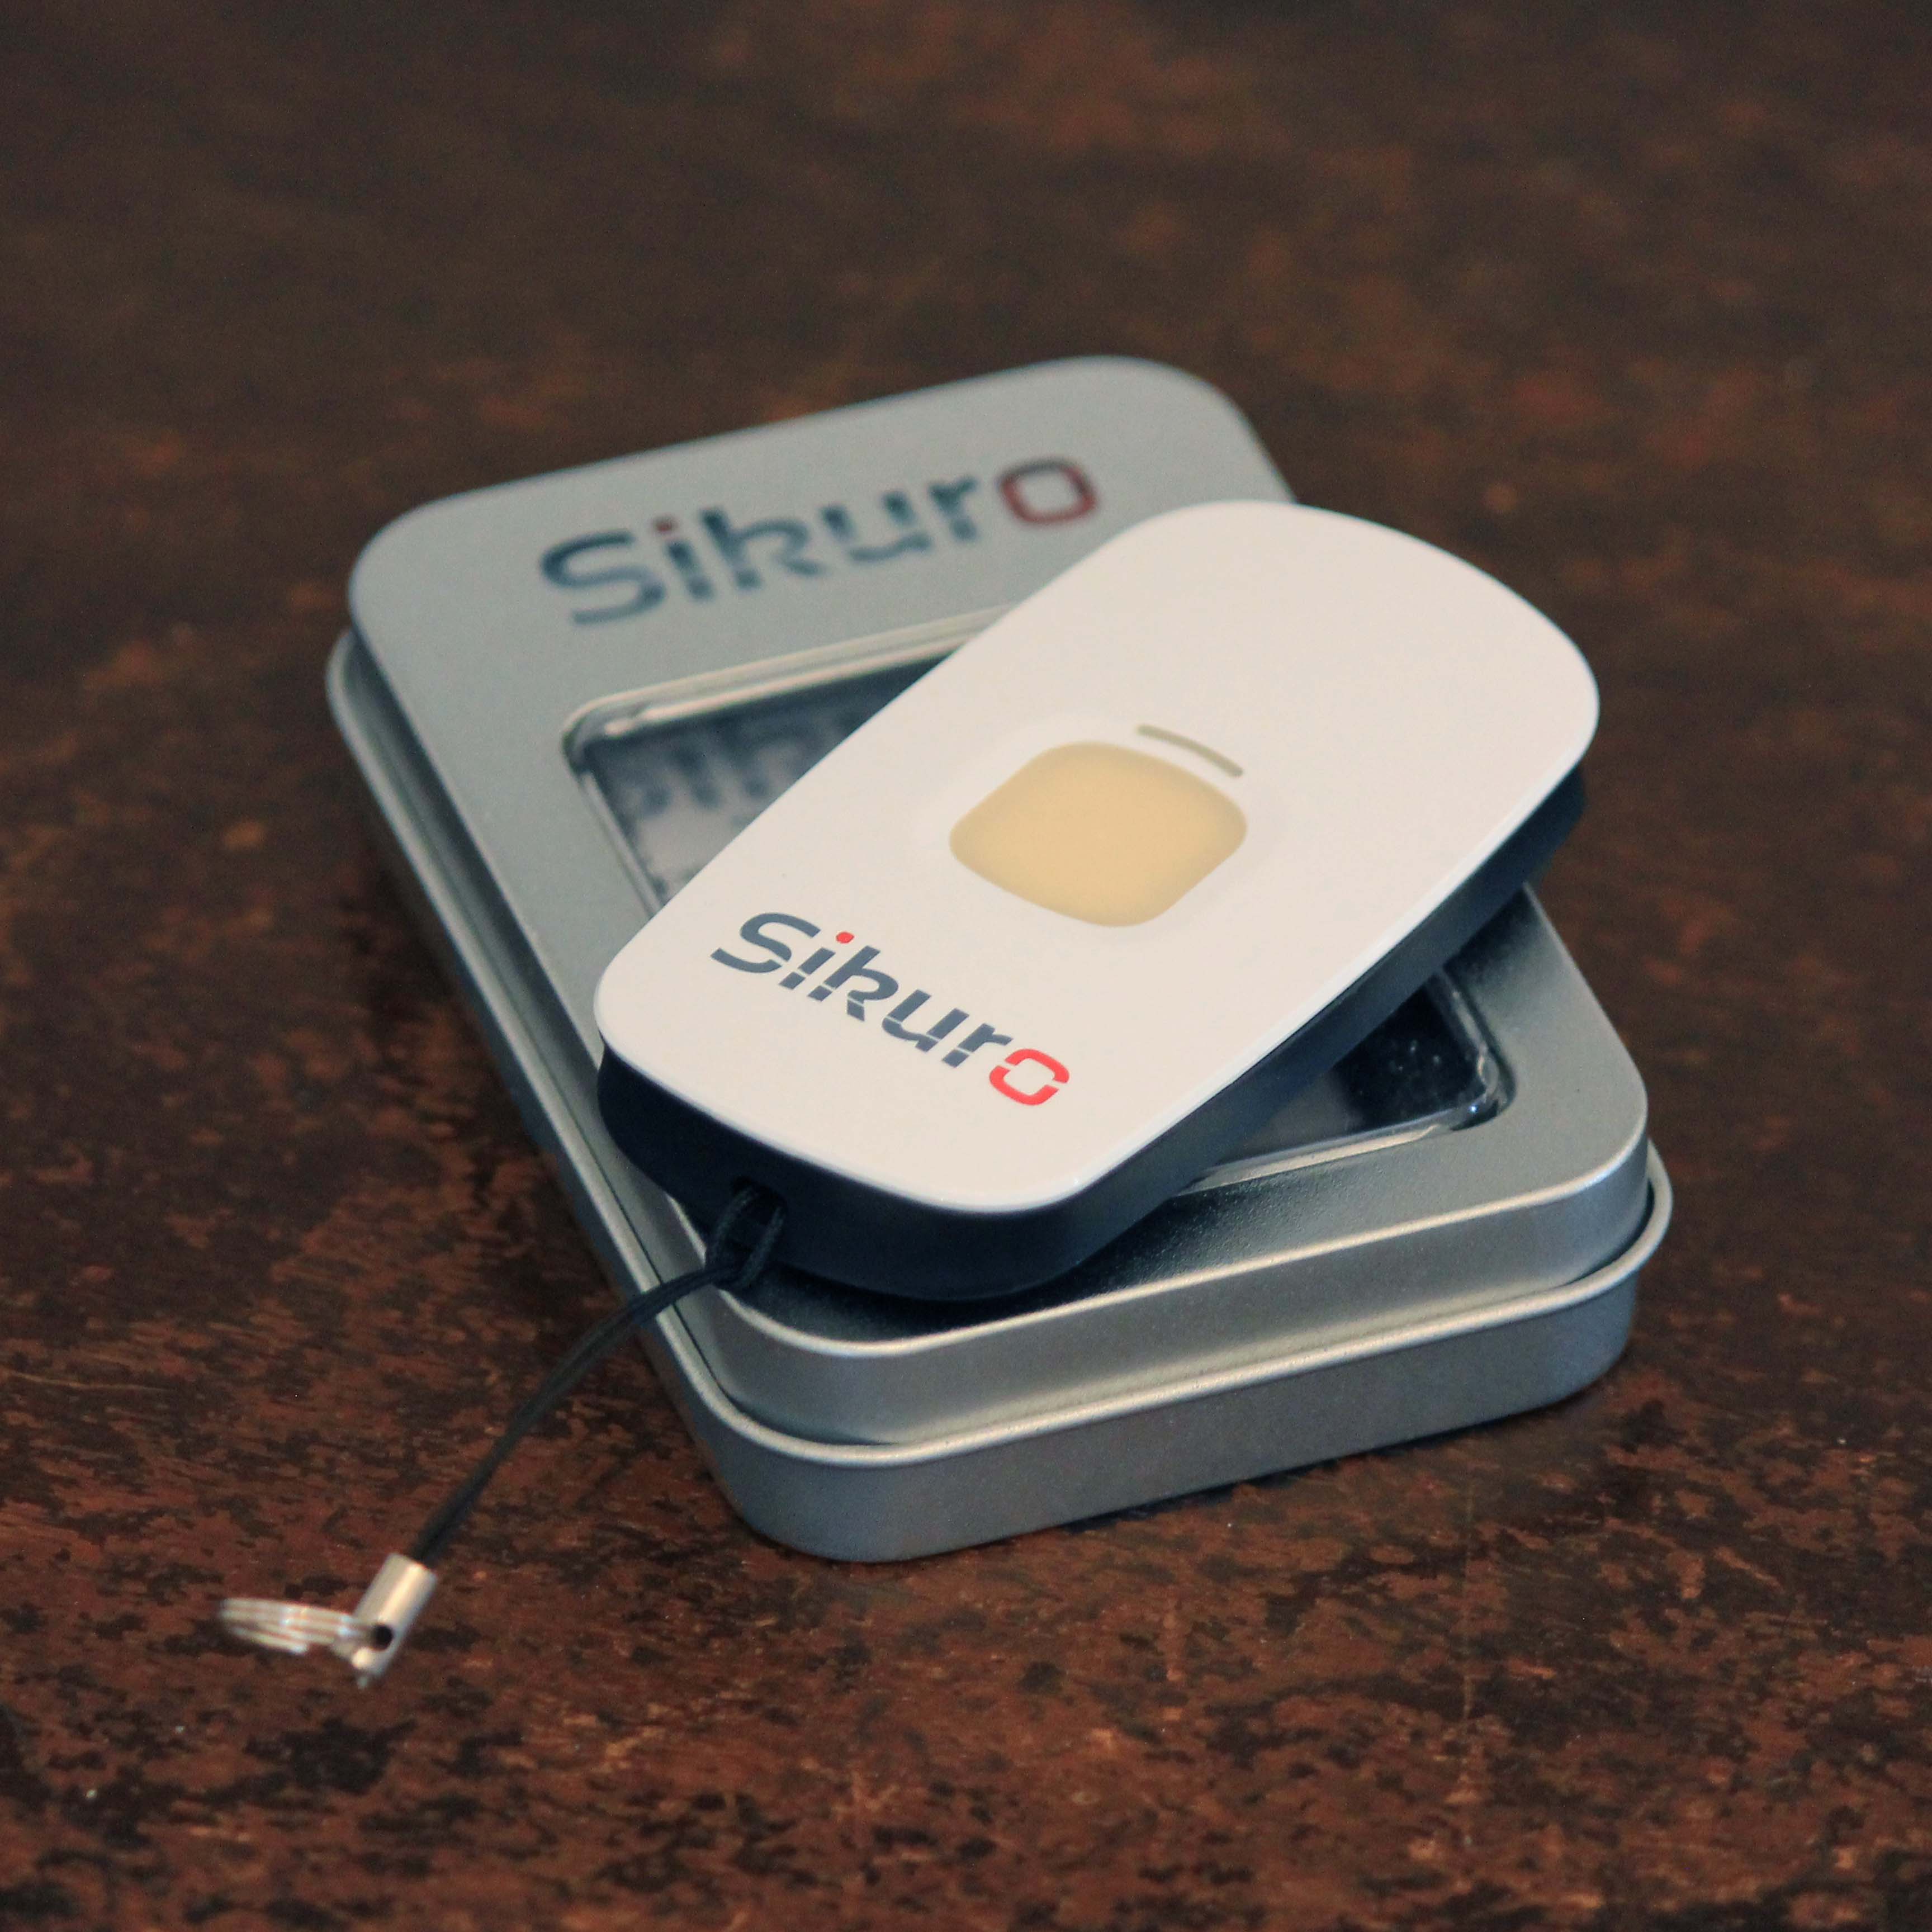 Sikuro -  Il telecomando d'Emergenza Multifunzione